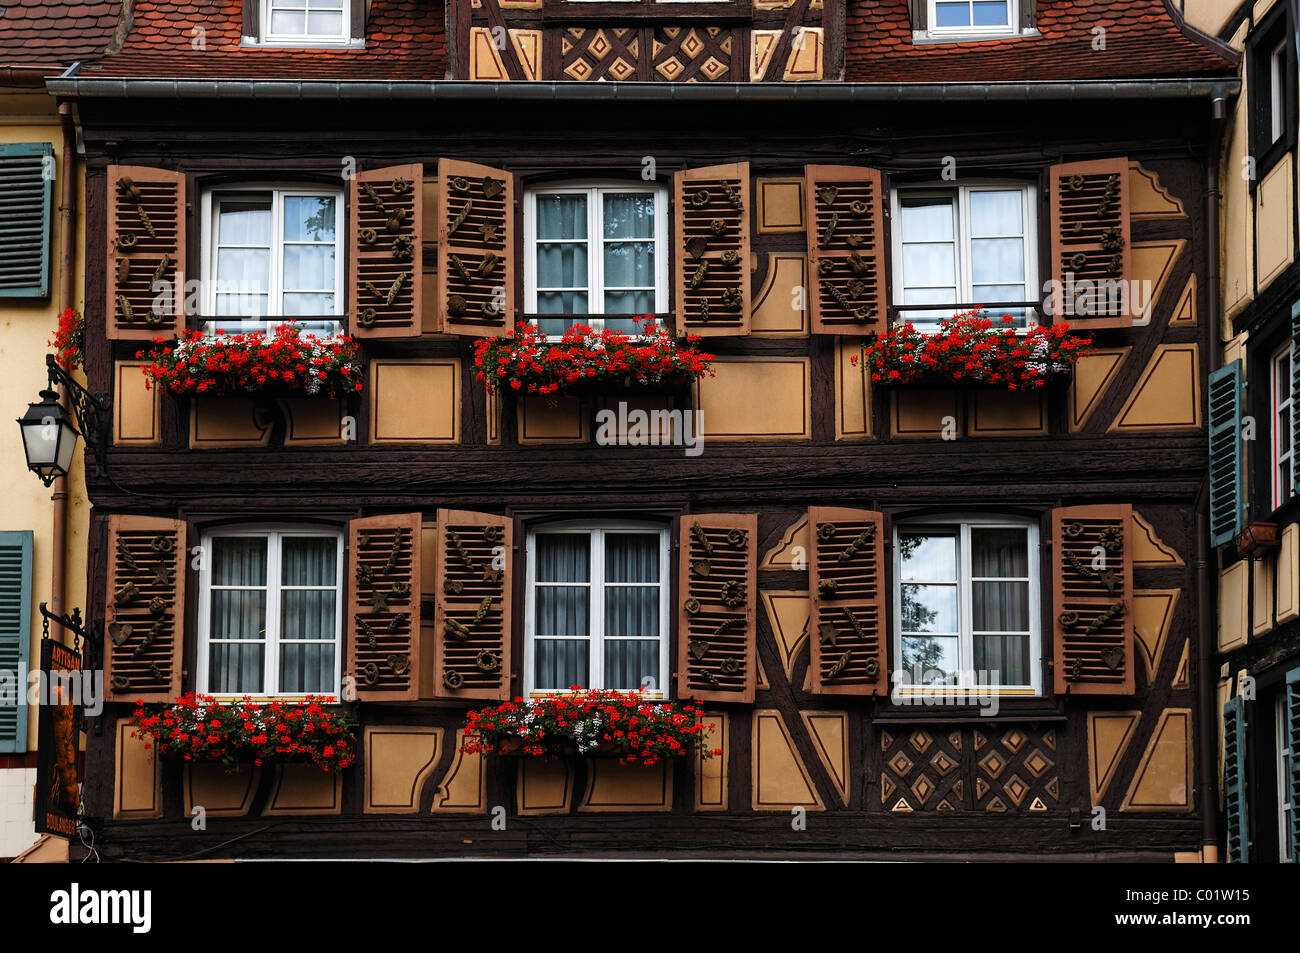 Vieille façade à pans de bois, à des produits de boulangerie sur les volets comme décoration, Place Jeanne D'Arc 6, Colmar, Alsace, France Banque D'Images